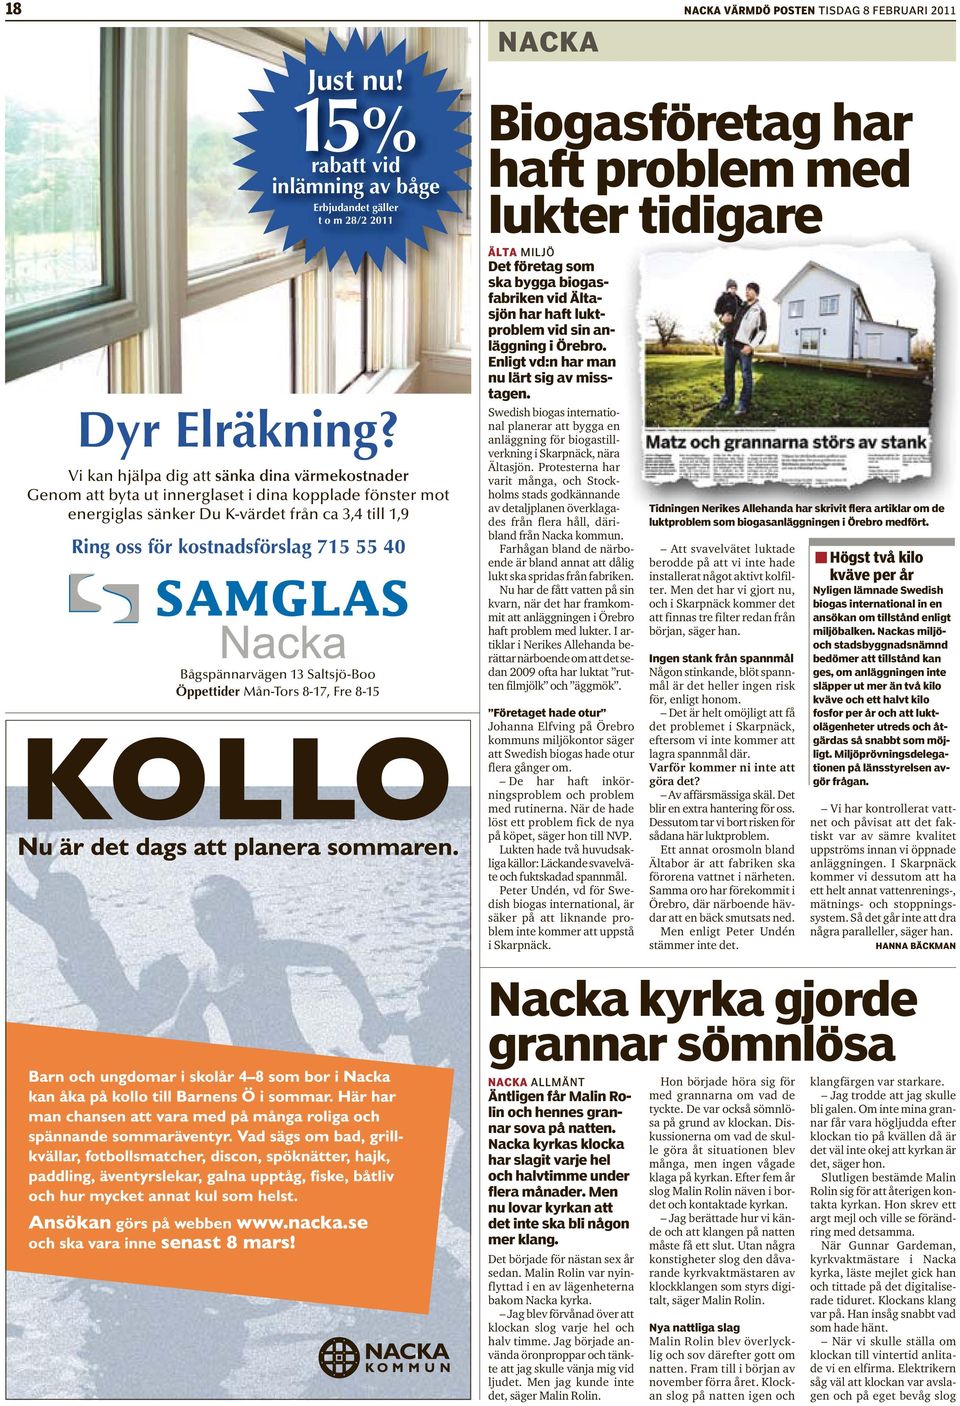 Bågspännarvägen 13 Saltsjö-Boo Öppettider Mån-Tors 8-17, Fre 8-15 NACKA Biogasföretag har haft problem med lukter tidigare ÄLTA MILJÖ Det företag som ska bygga biogasfabriken vid Ältasjön har haft